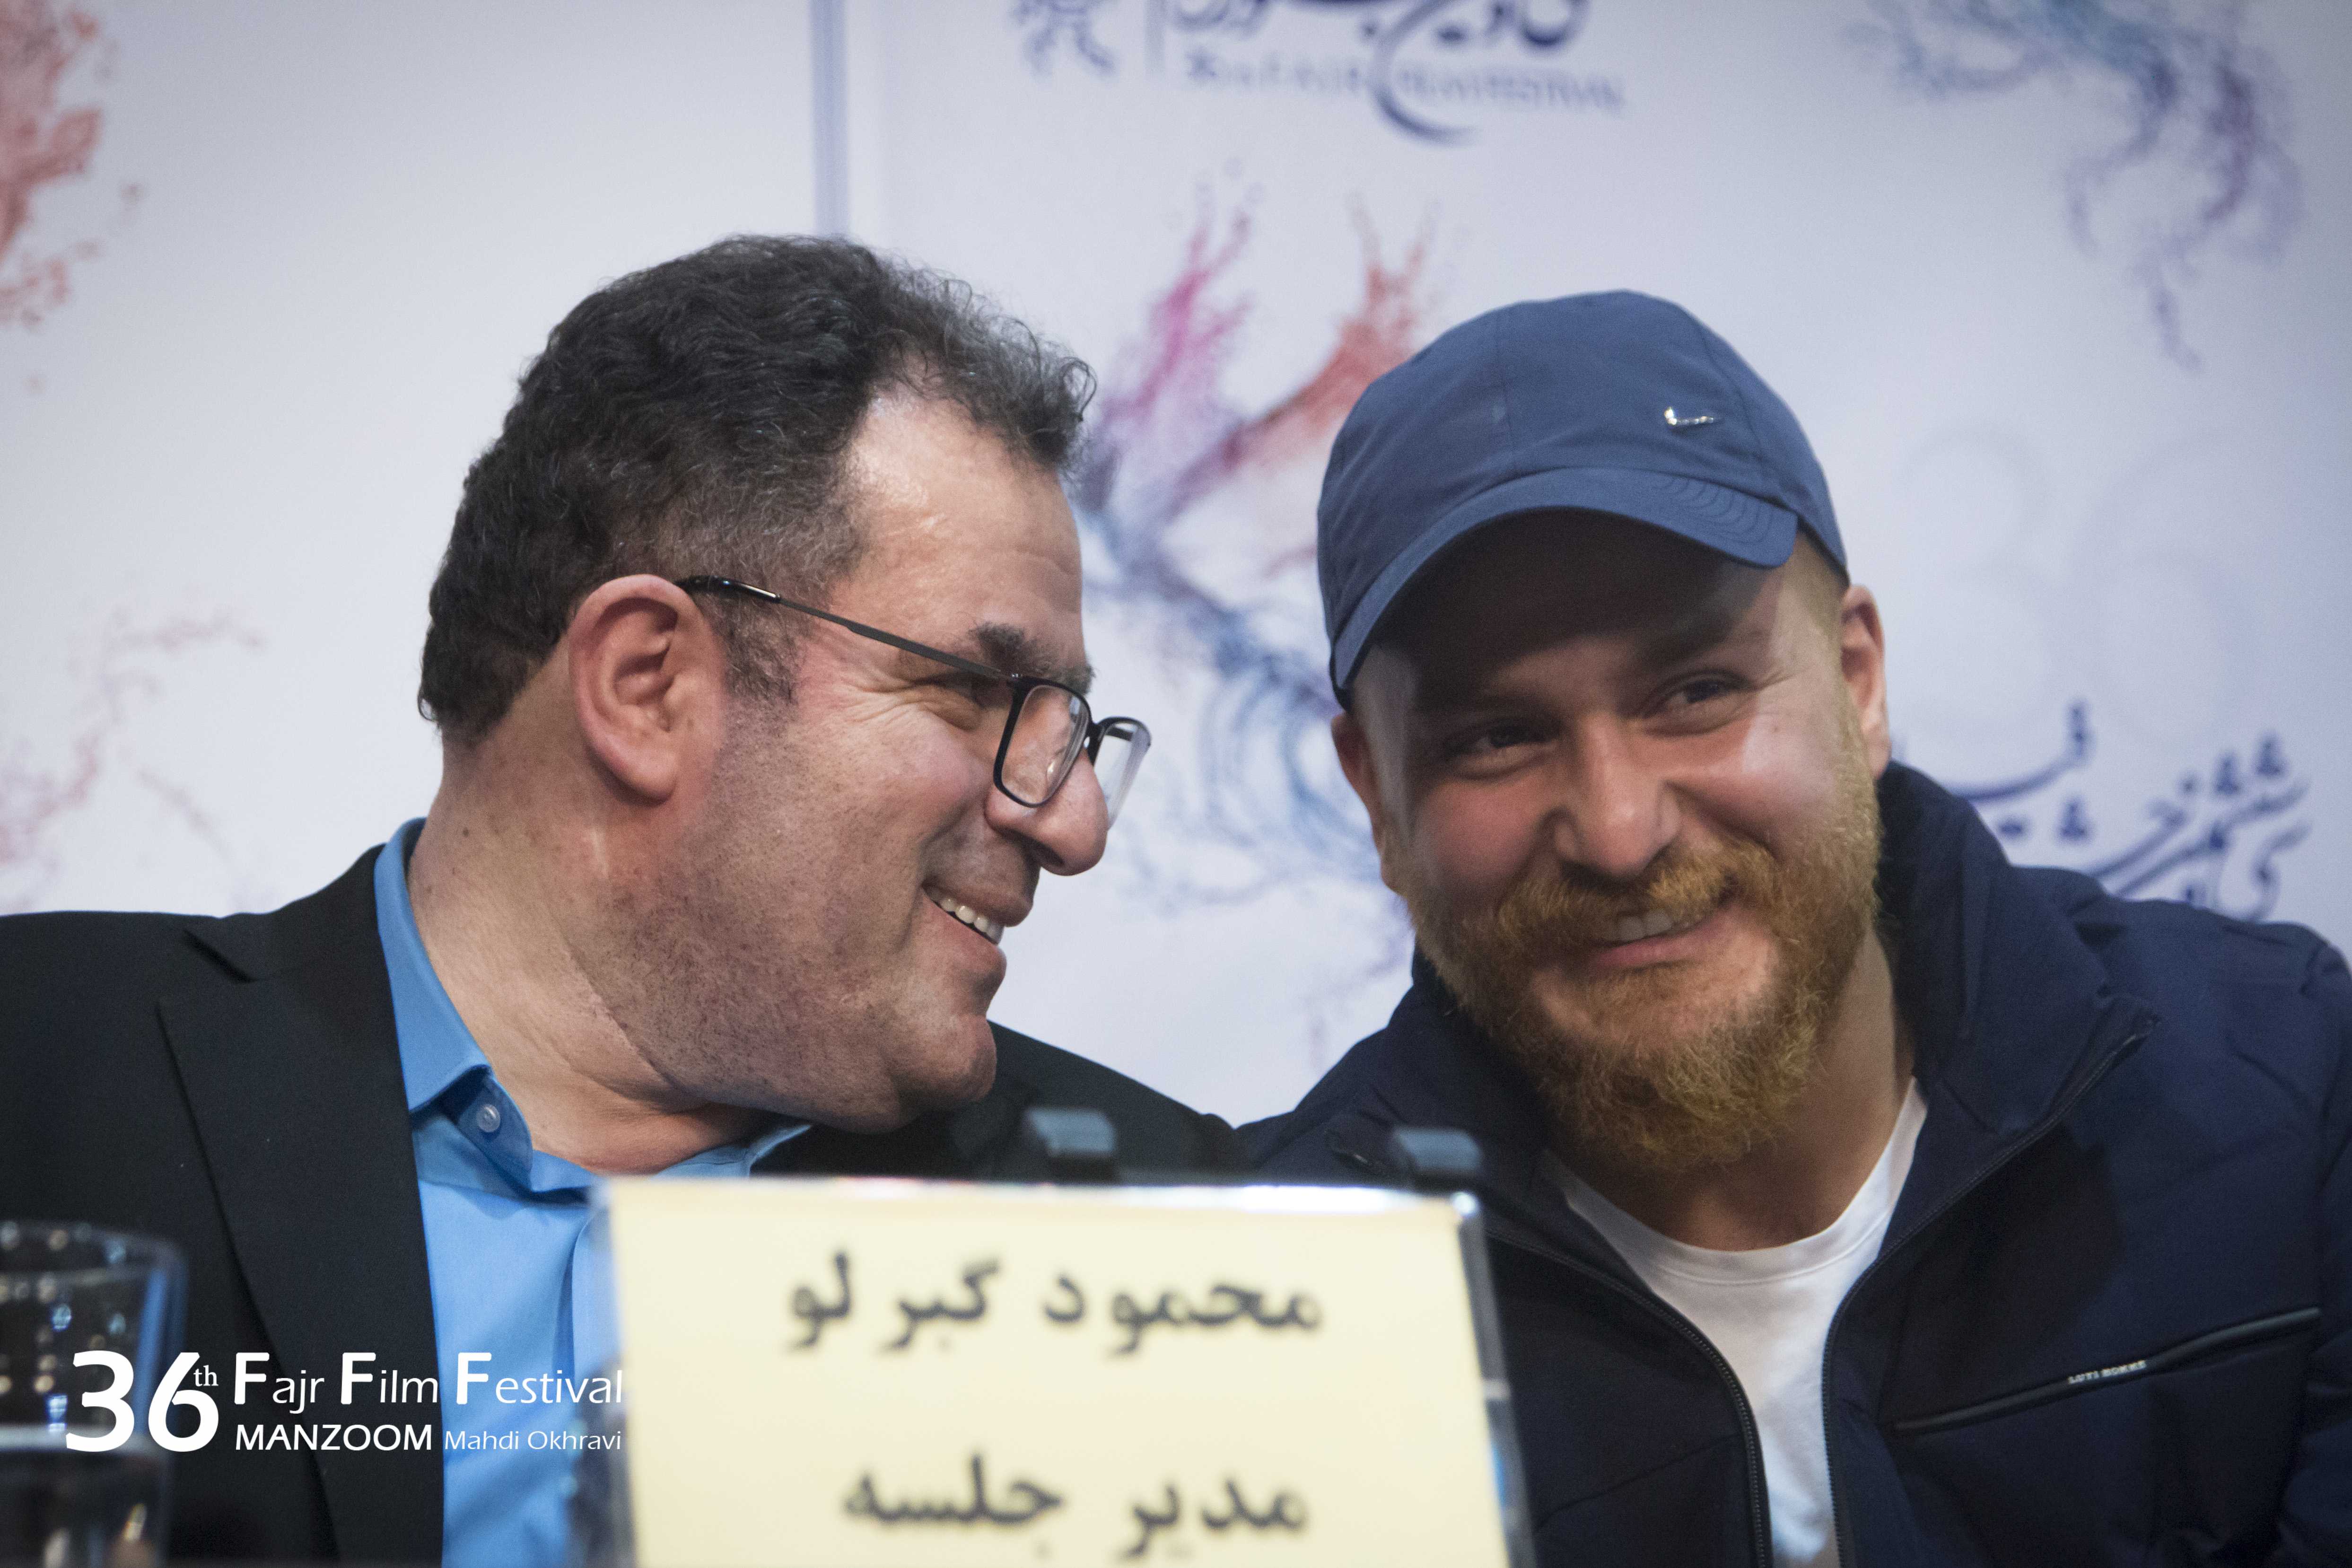 میلاد کی‌مرام در نشست خبری فیلم سینمایی امیر به همراه محمود گبرلو